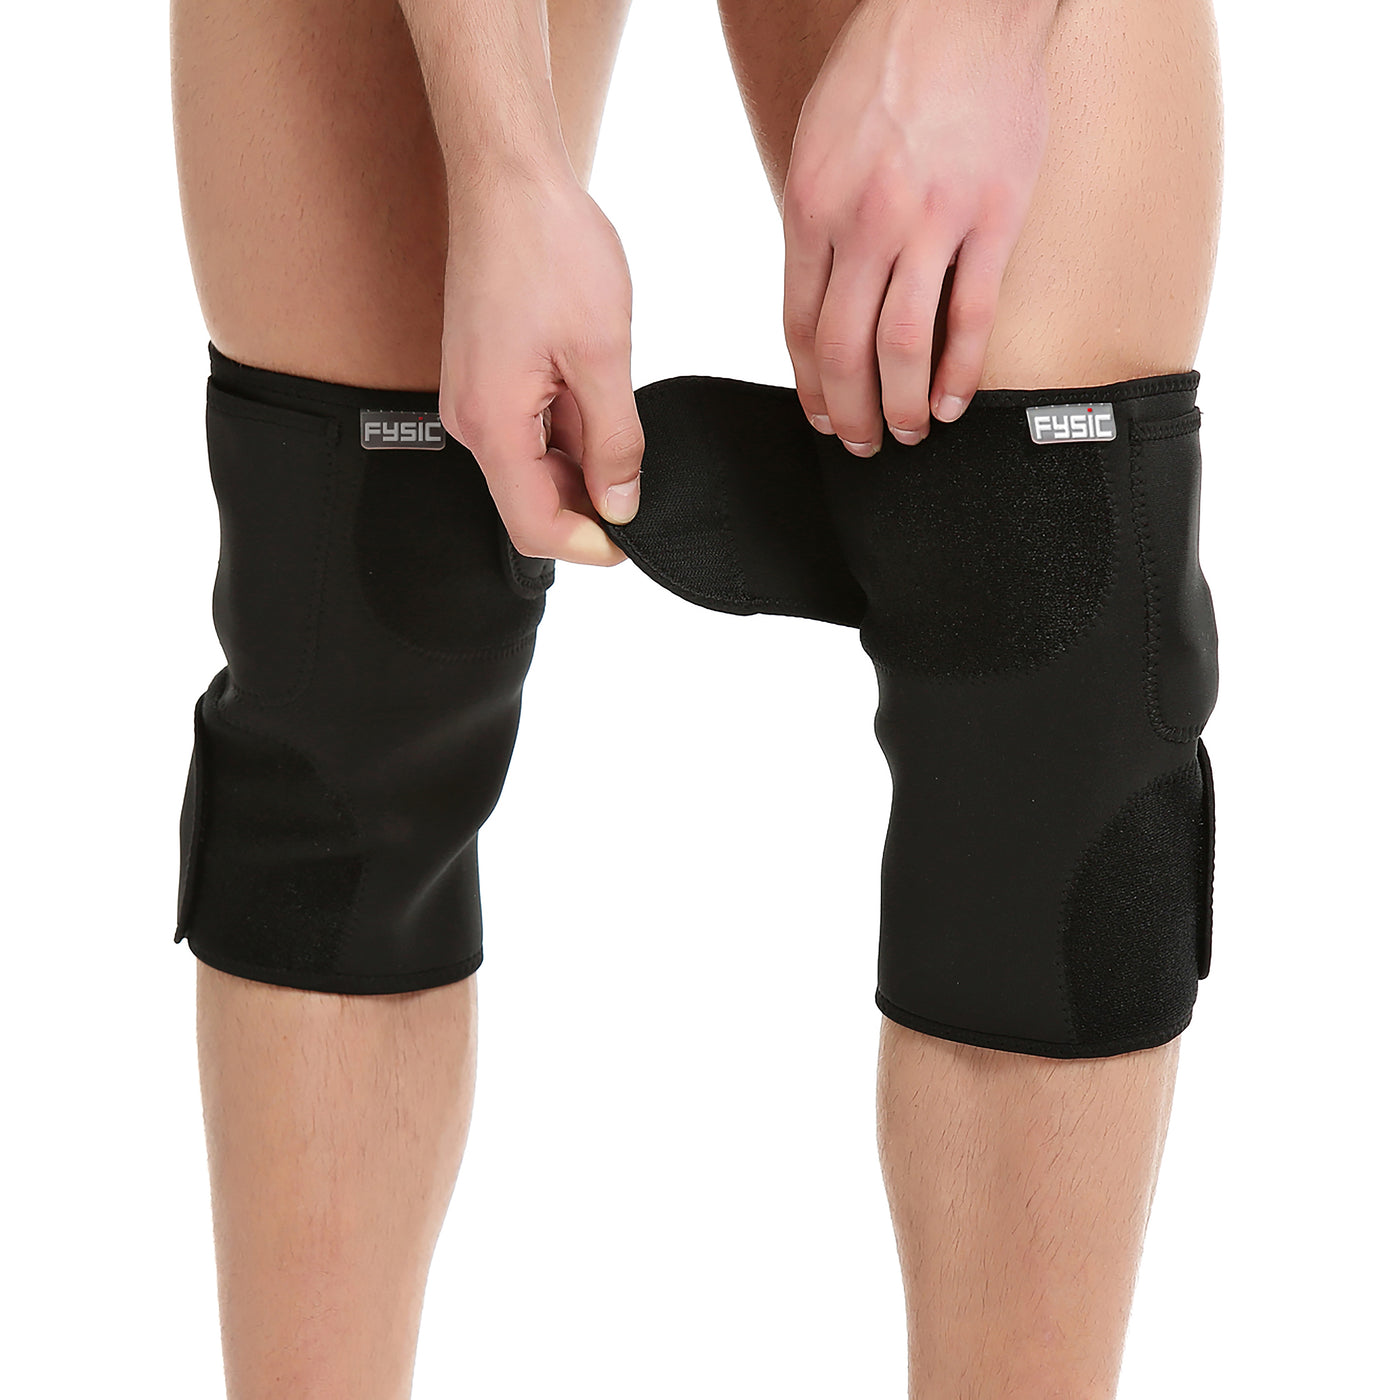 Fysic FHP-180L - Kabellose Wärmebandage für das Knie, links